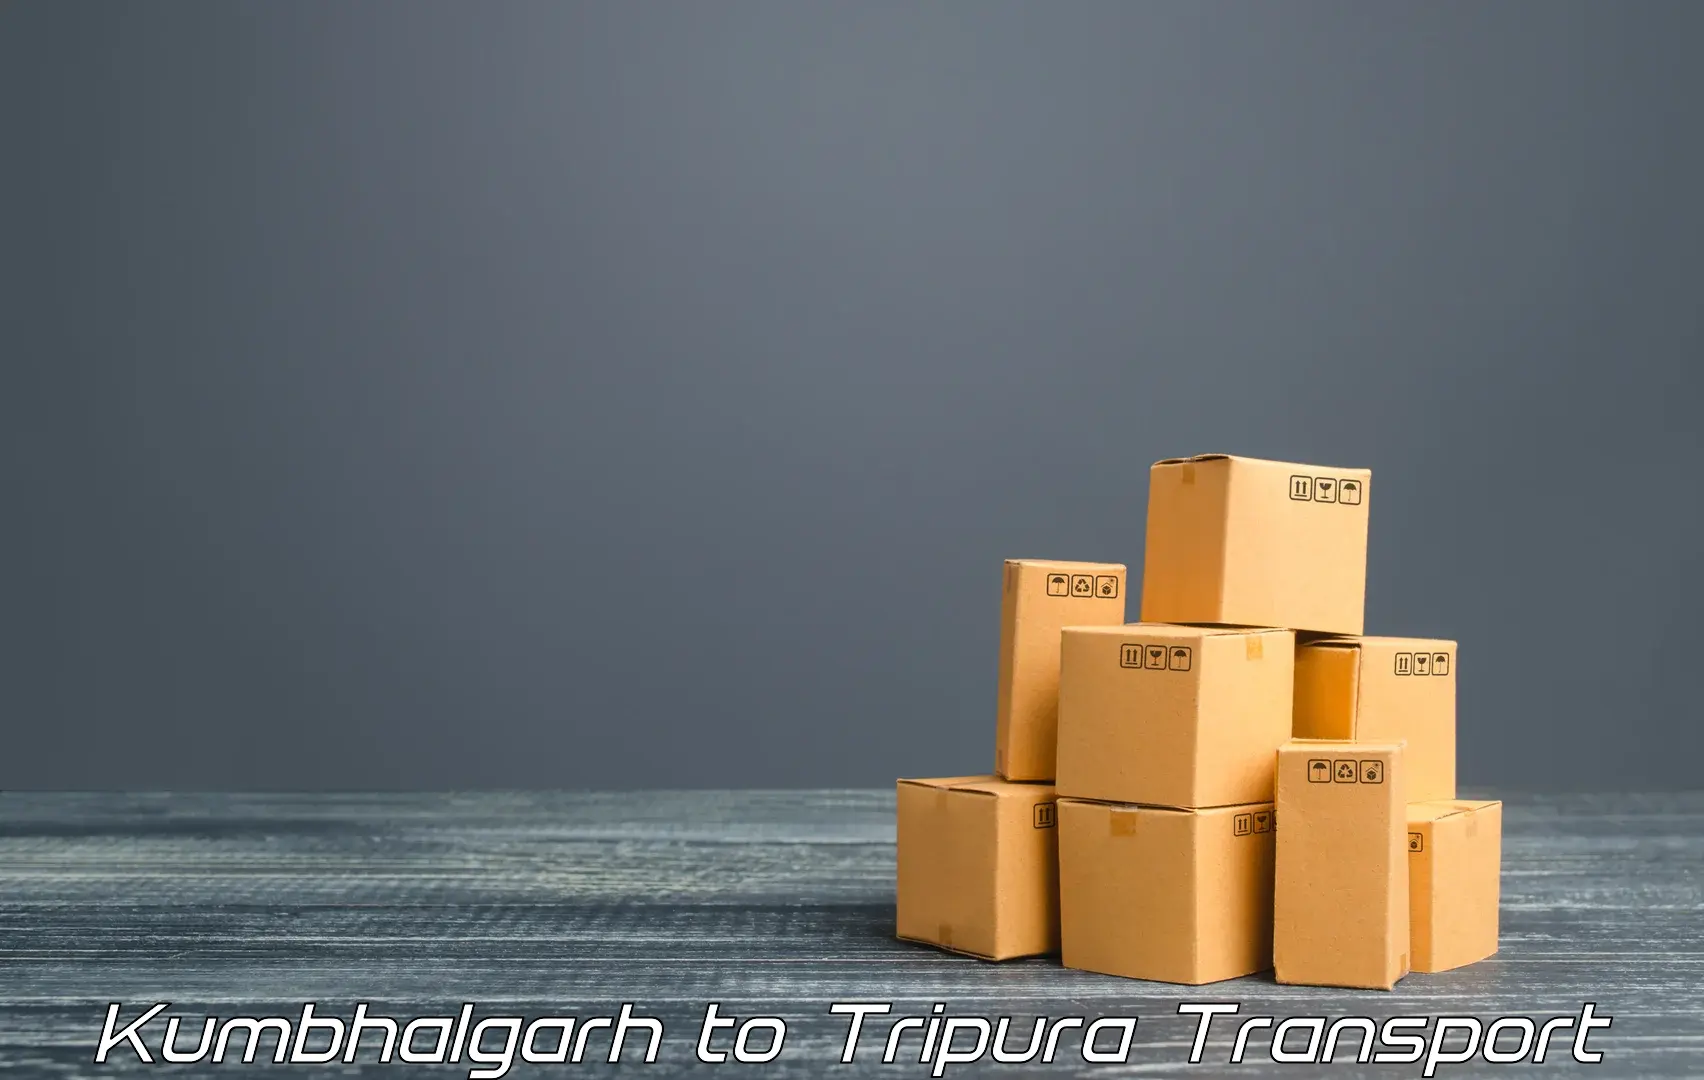 Shipping partner Kumbhalgarh to Dharmanagar